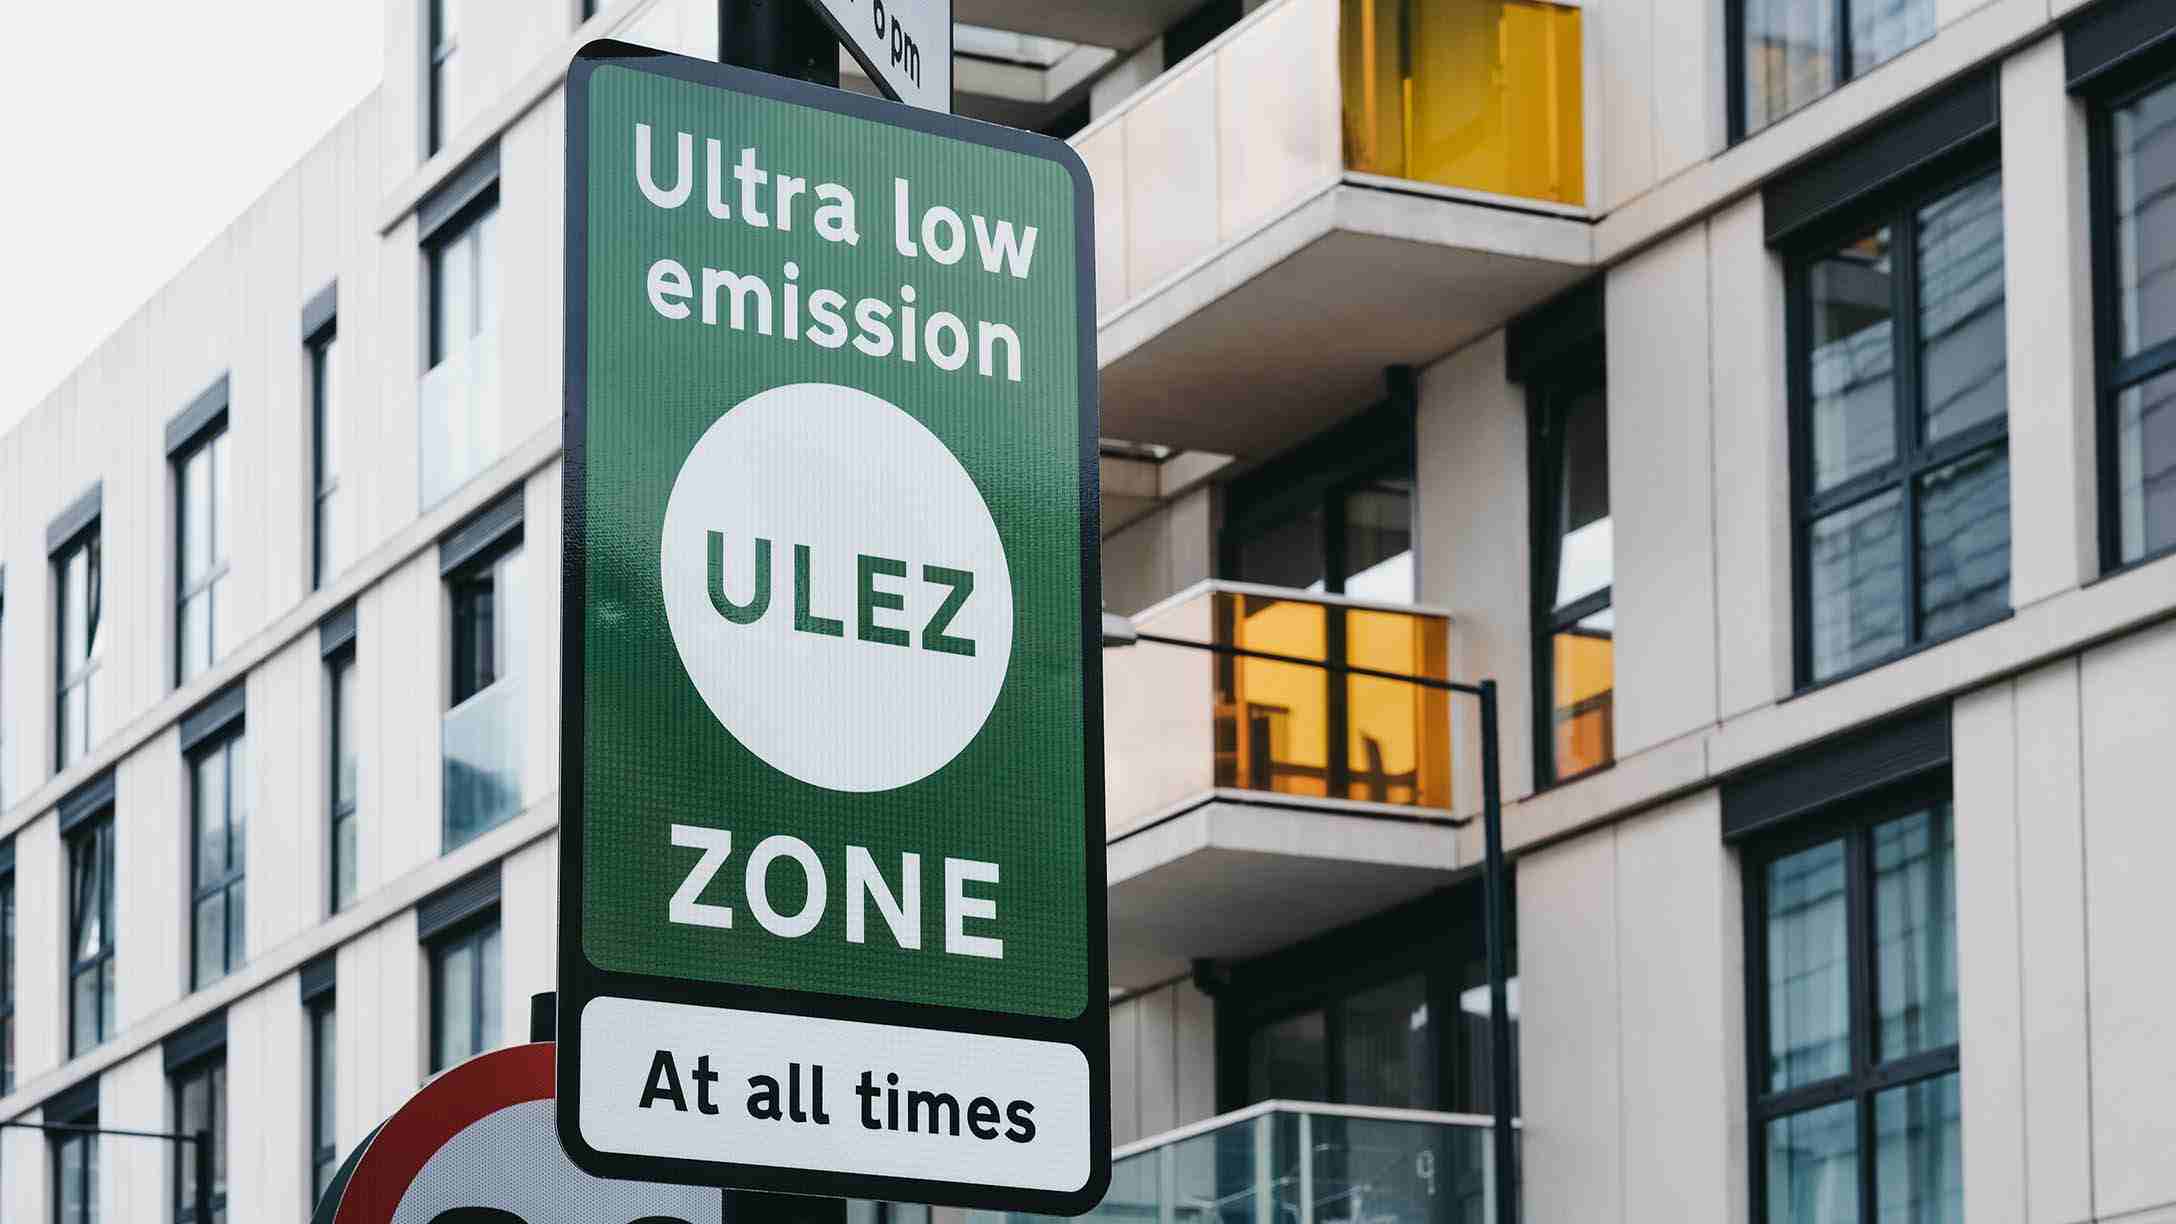 Una señal de calle en Londres, Inglaterra, que indica que el conductor está entrando en una zona de emisiones ultrabajas y que se hace cumplir en todo momento.